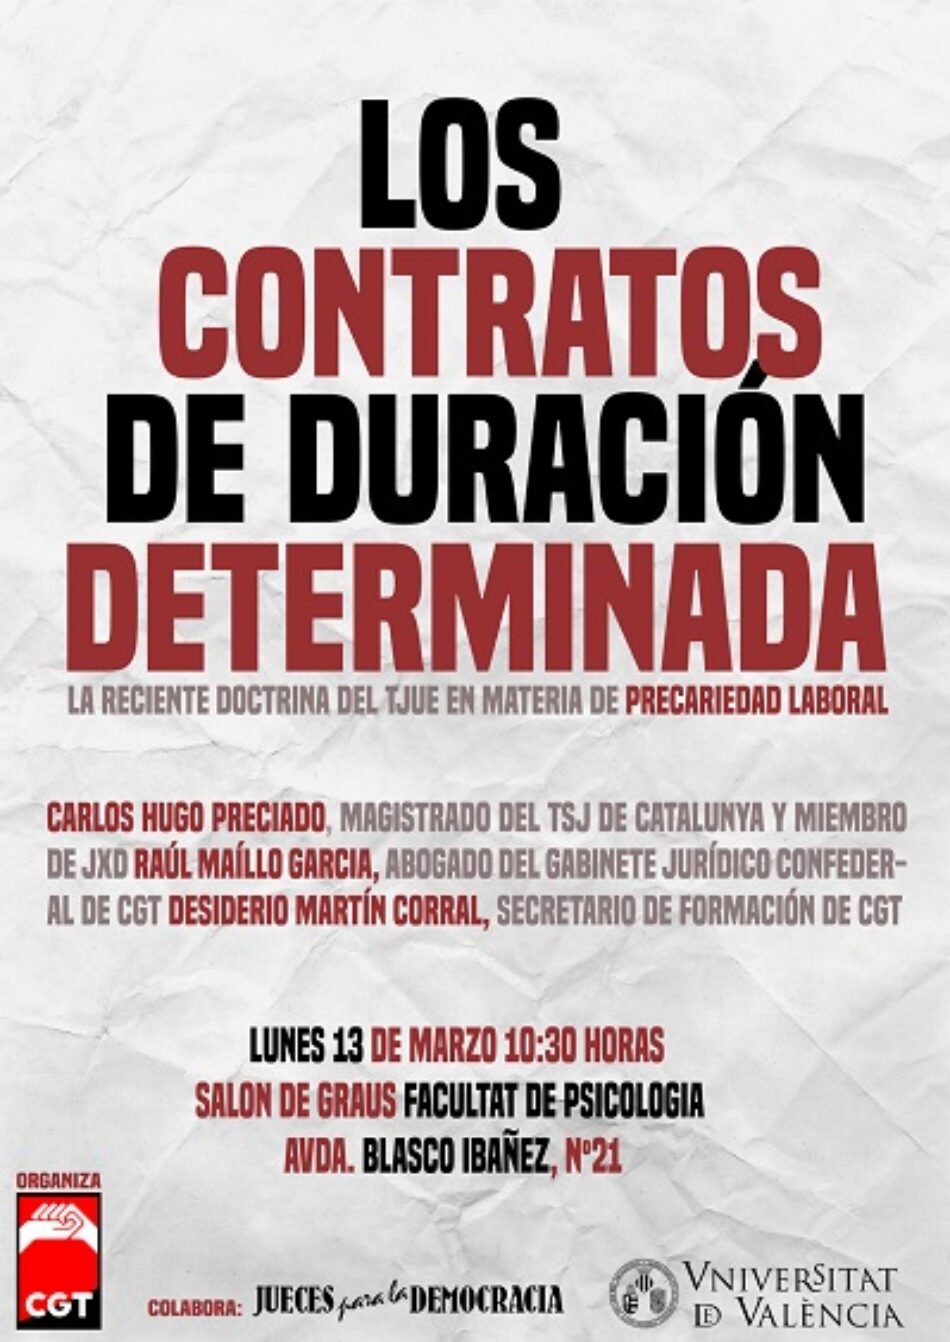 CGT y Jueces para la Democracia abordarán las consecuencias de la sentencia del TJUE sobre los contratos de duración determinada en una charla en la Universitat de València